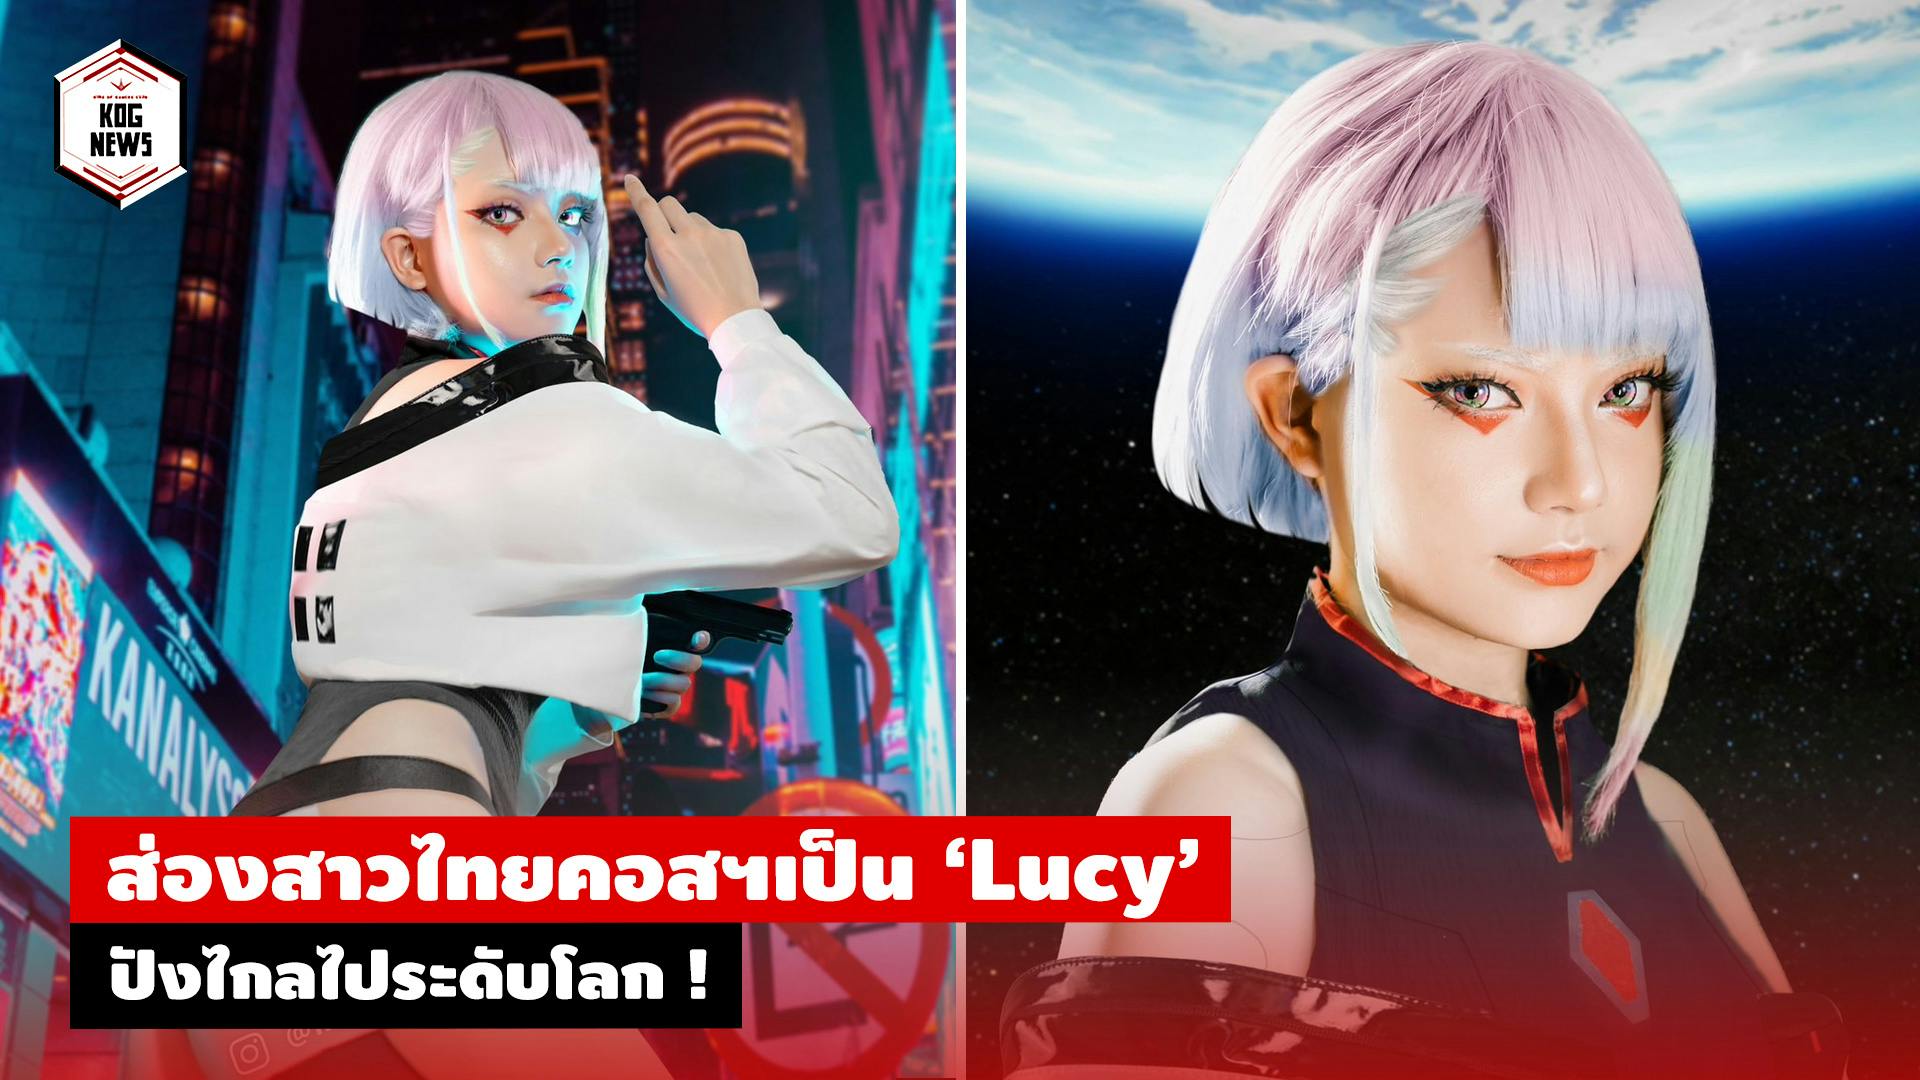 ส่องสาวไทยคอสฯเป็น ‘Lucy’ ปังไกลไประดับโลก !